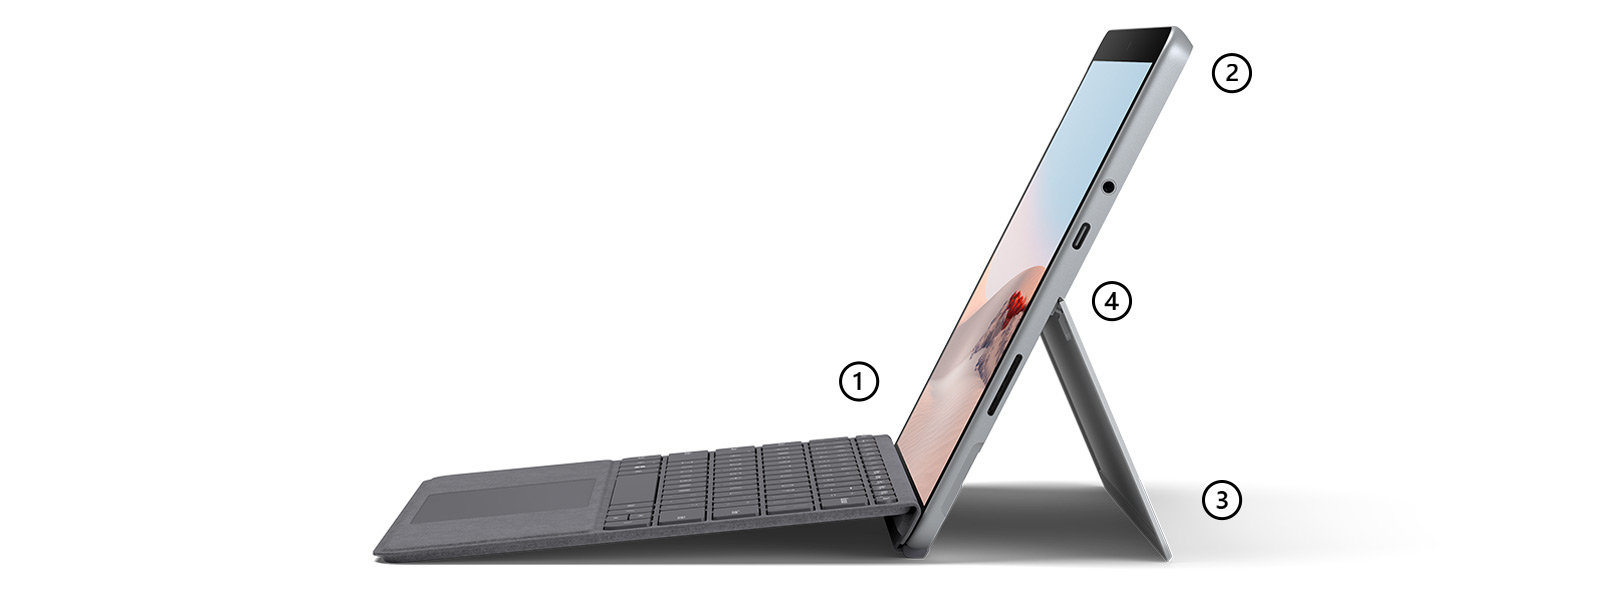 带有 Surface Go 特制版专业键盘盖（亮铂金）的笔记本模式的 Surface Go 2，重点突出支持触控笔的触控屏、麦克风和摄像头、一体式支架以及 USB-C 端口。